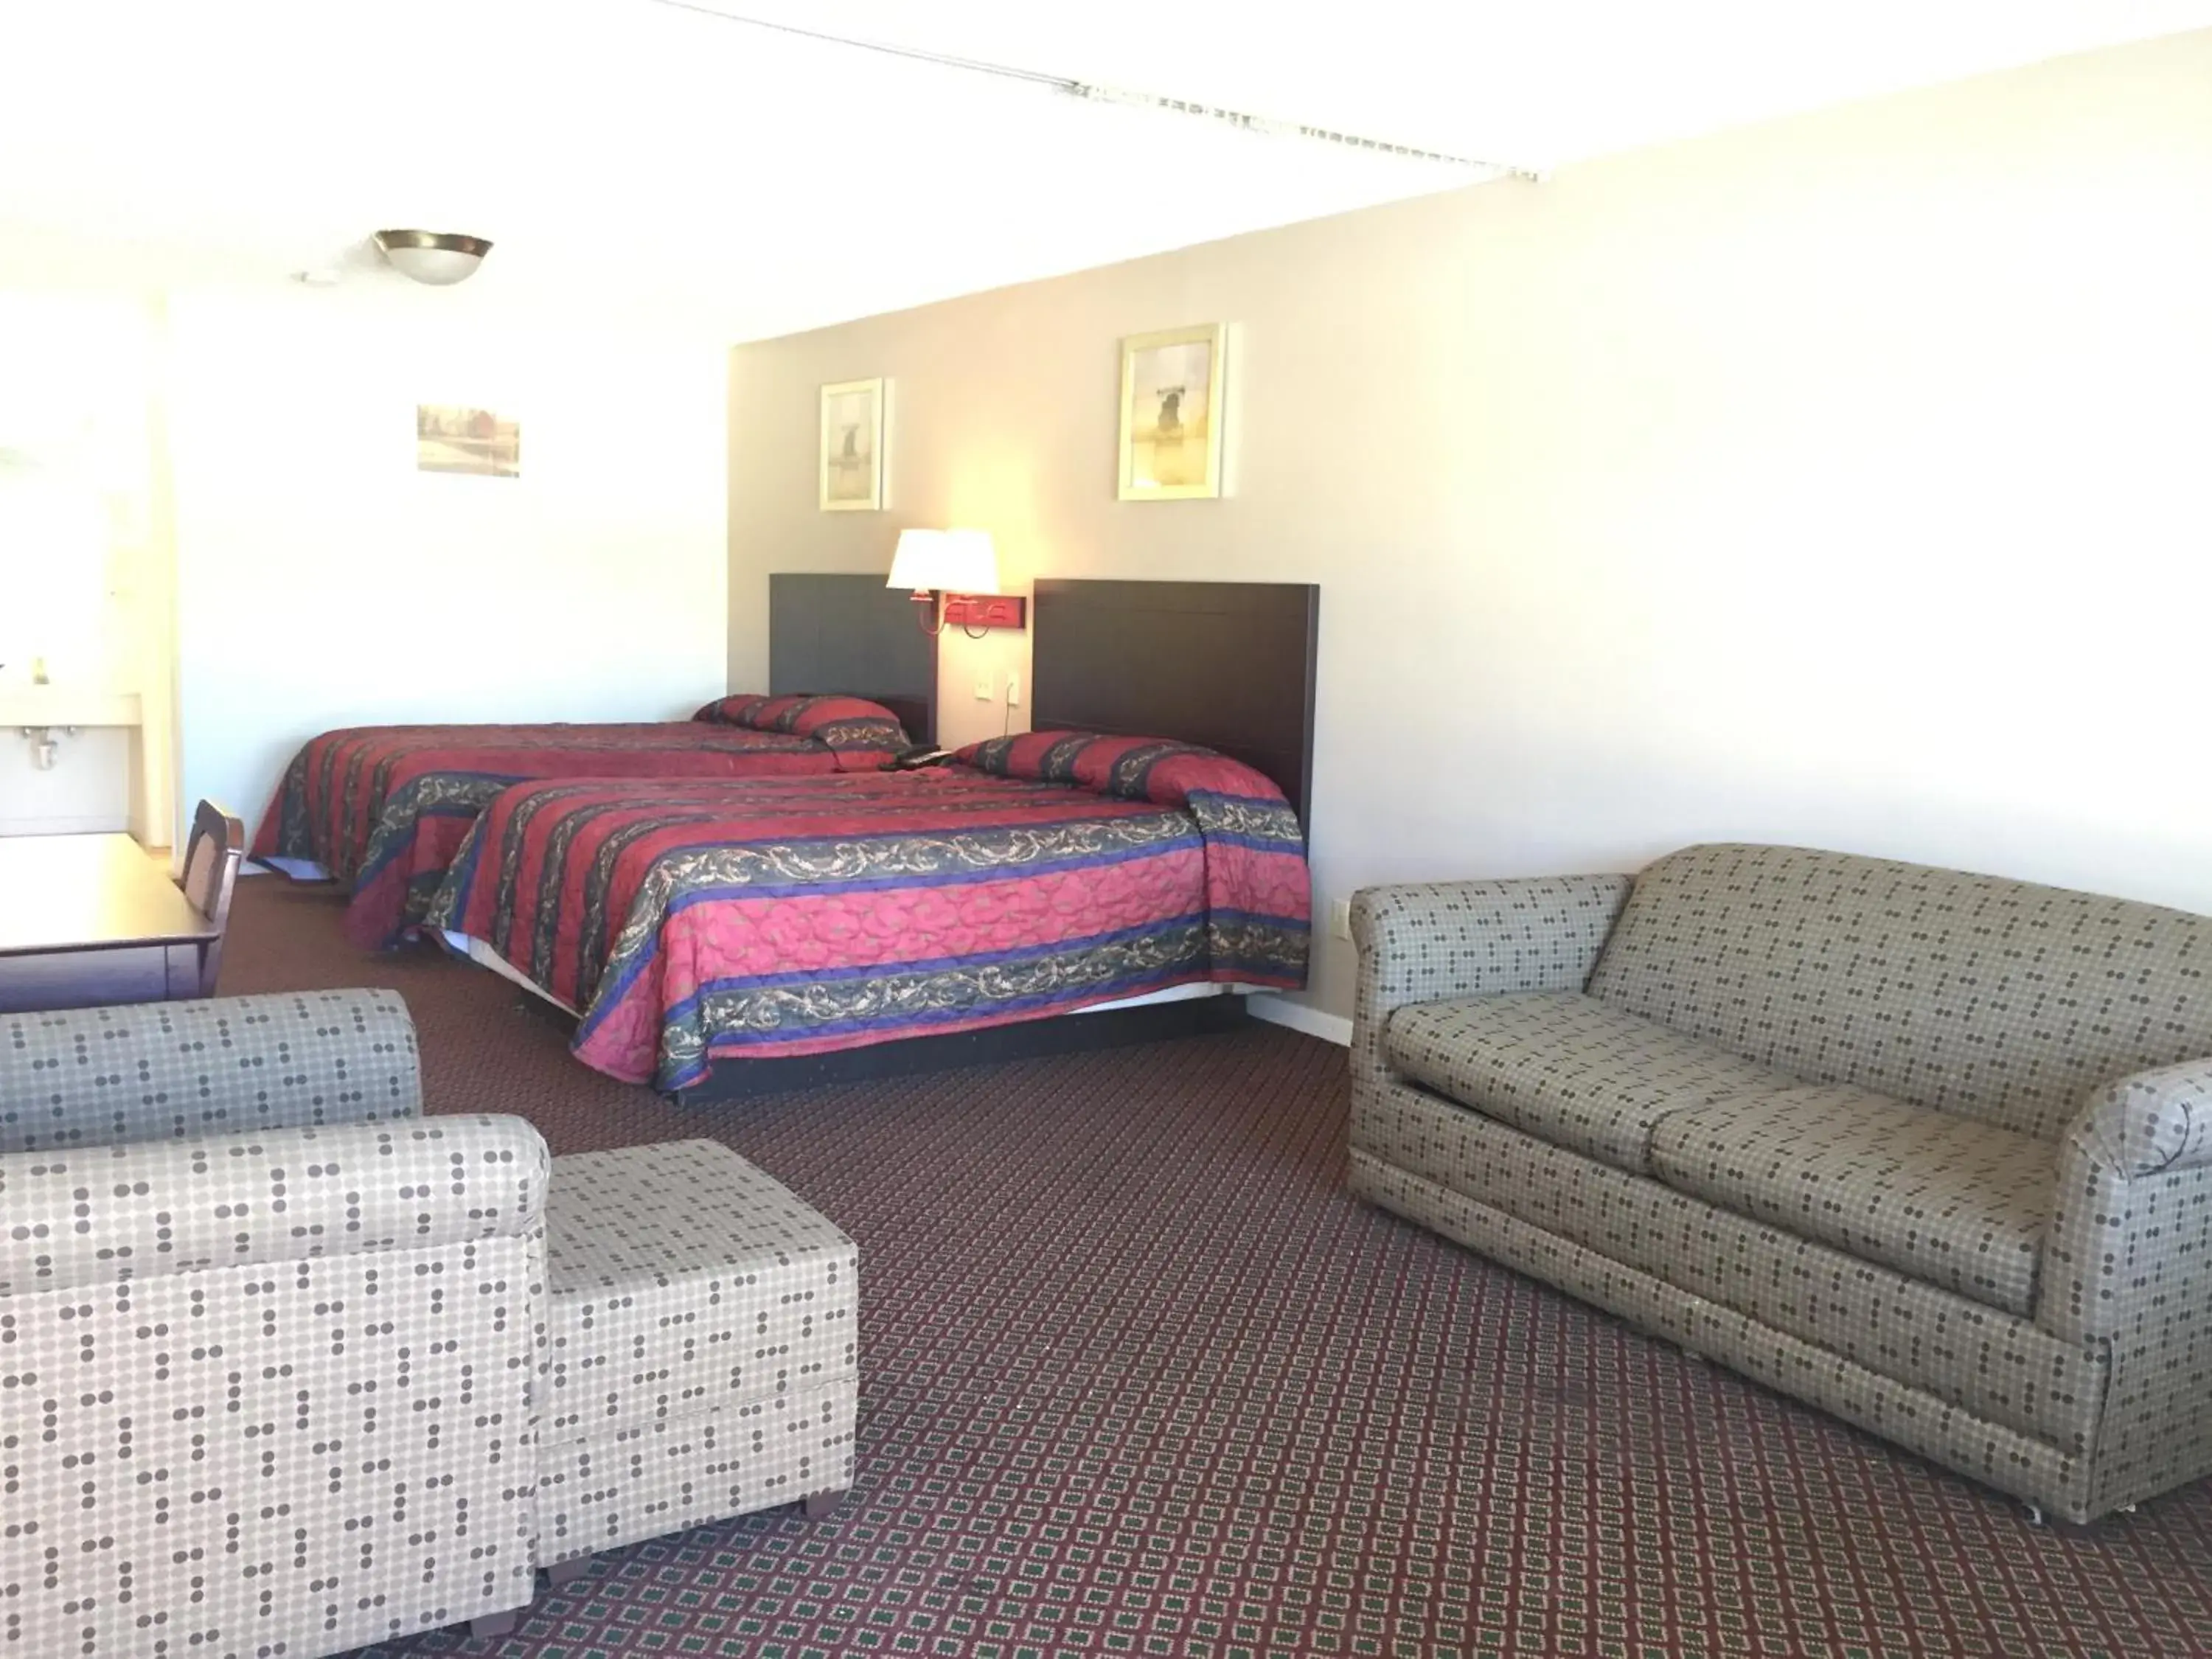 Bedroom, Room Photo in Royal Inn Abilene